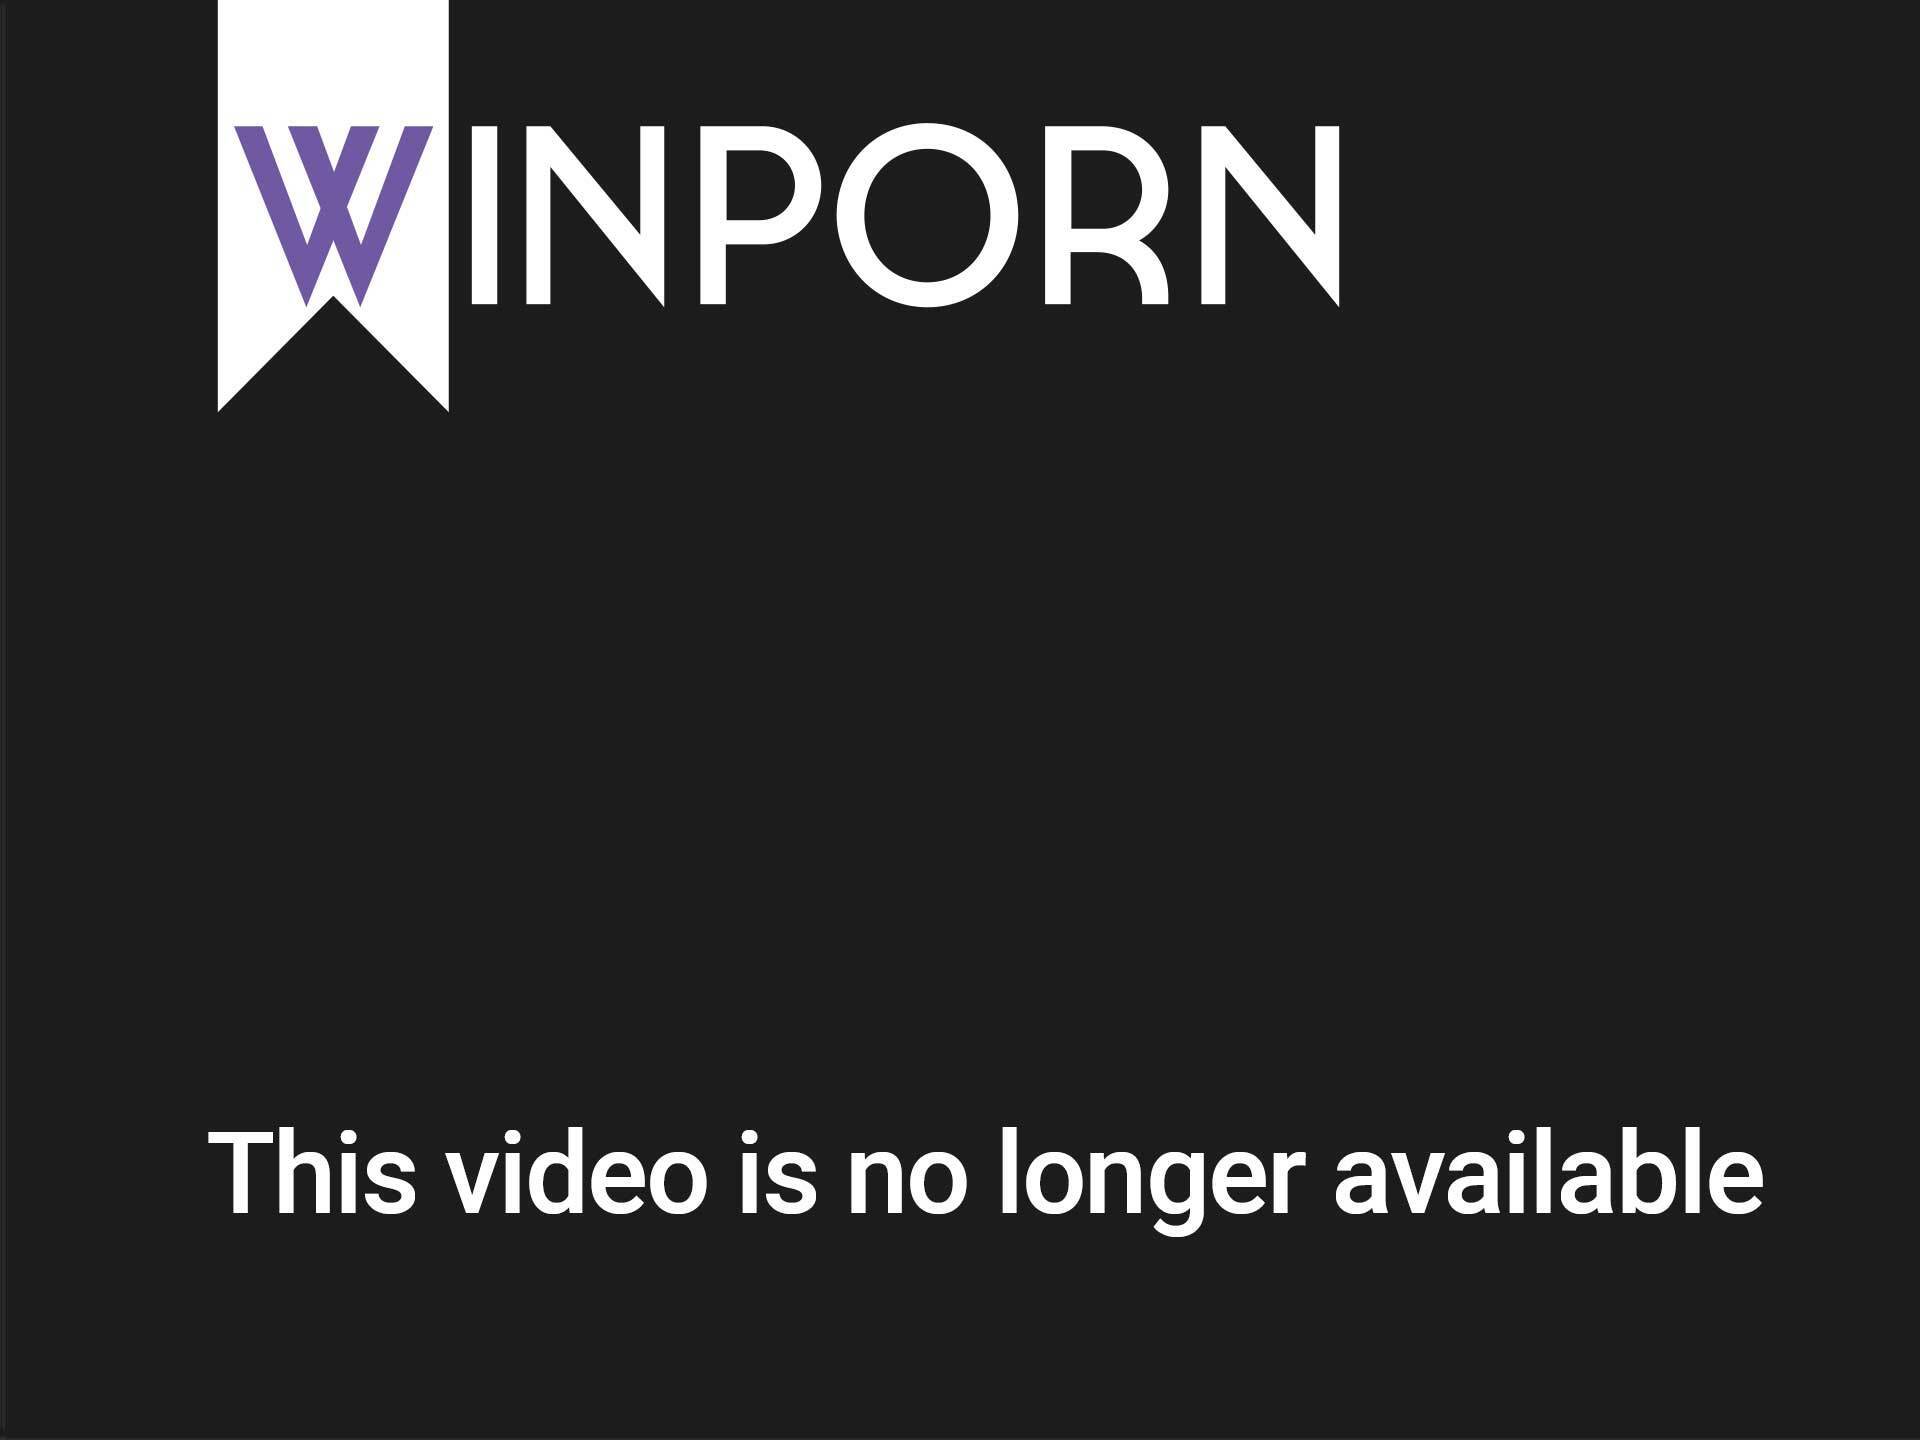 852px x 480px - Download Mobile Porn Videos - Busty Asian Pornstar Bondage Group Sex -  1760815 - WinPorn.com